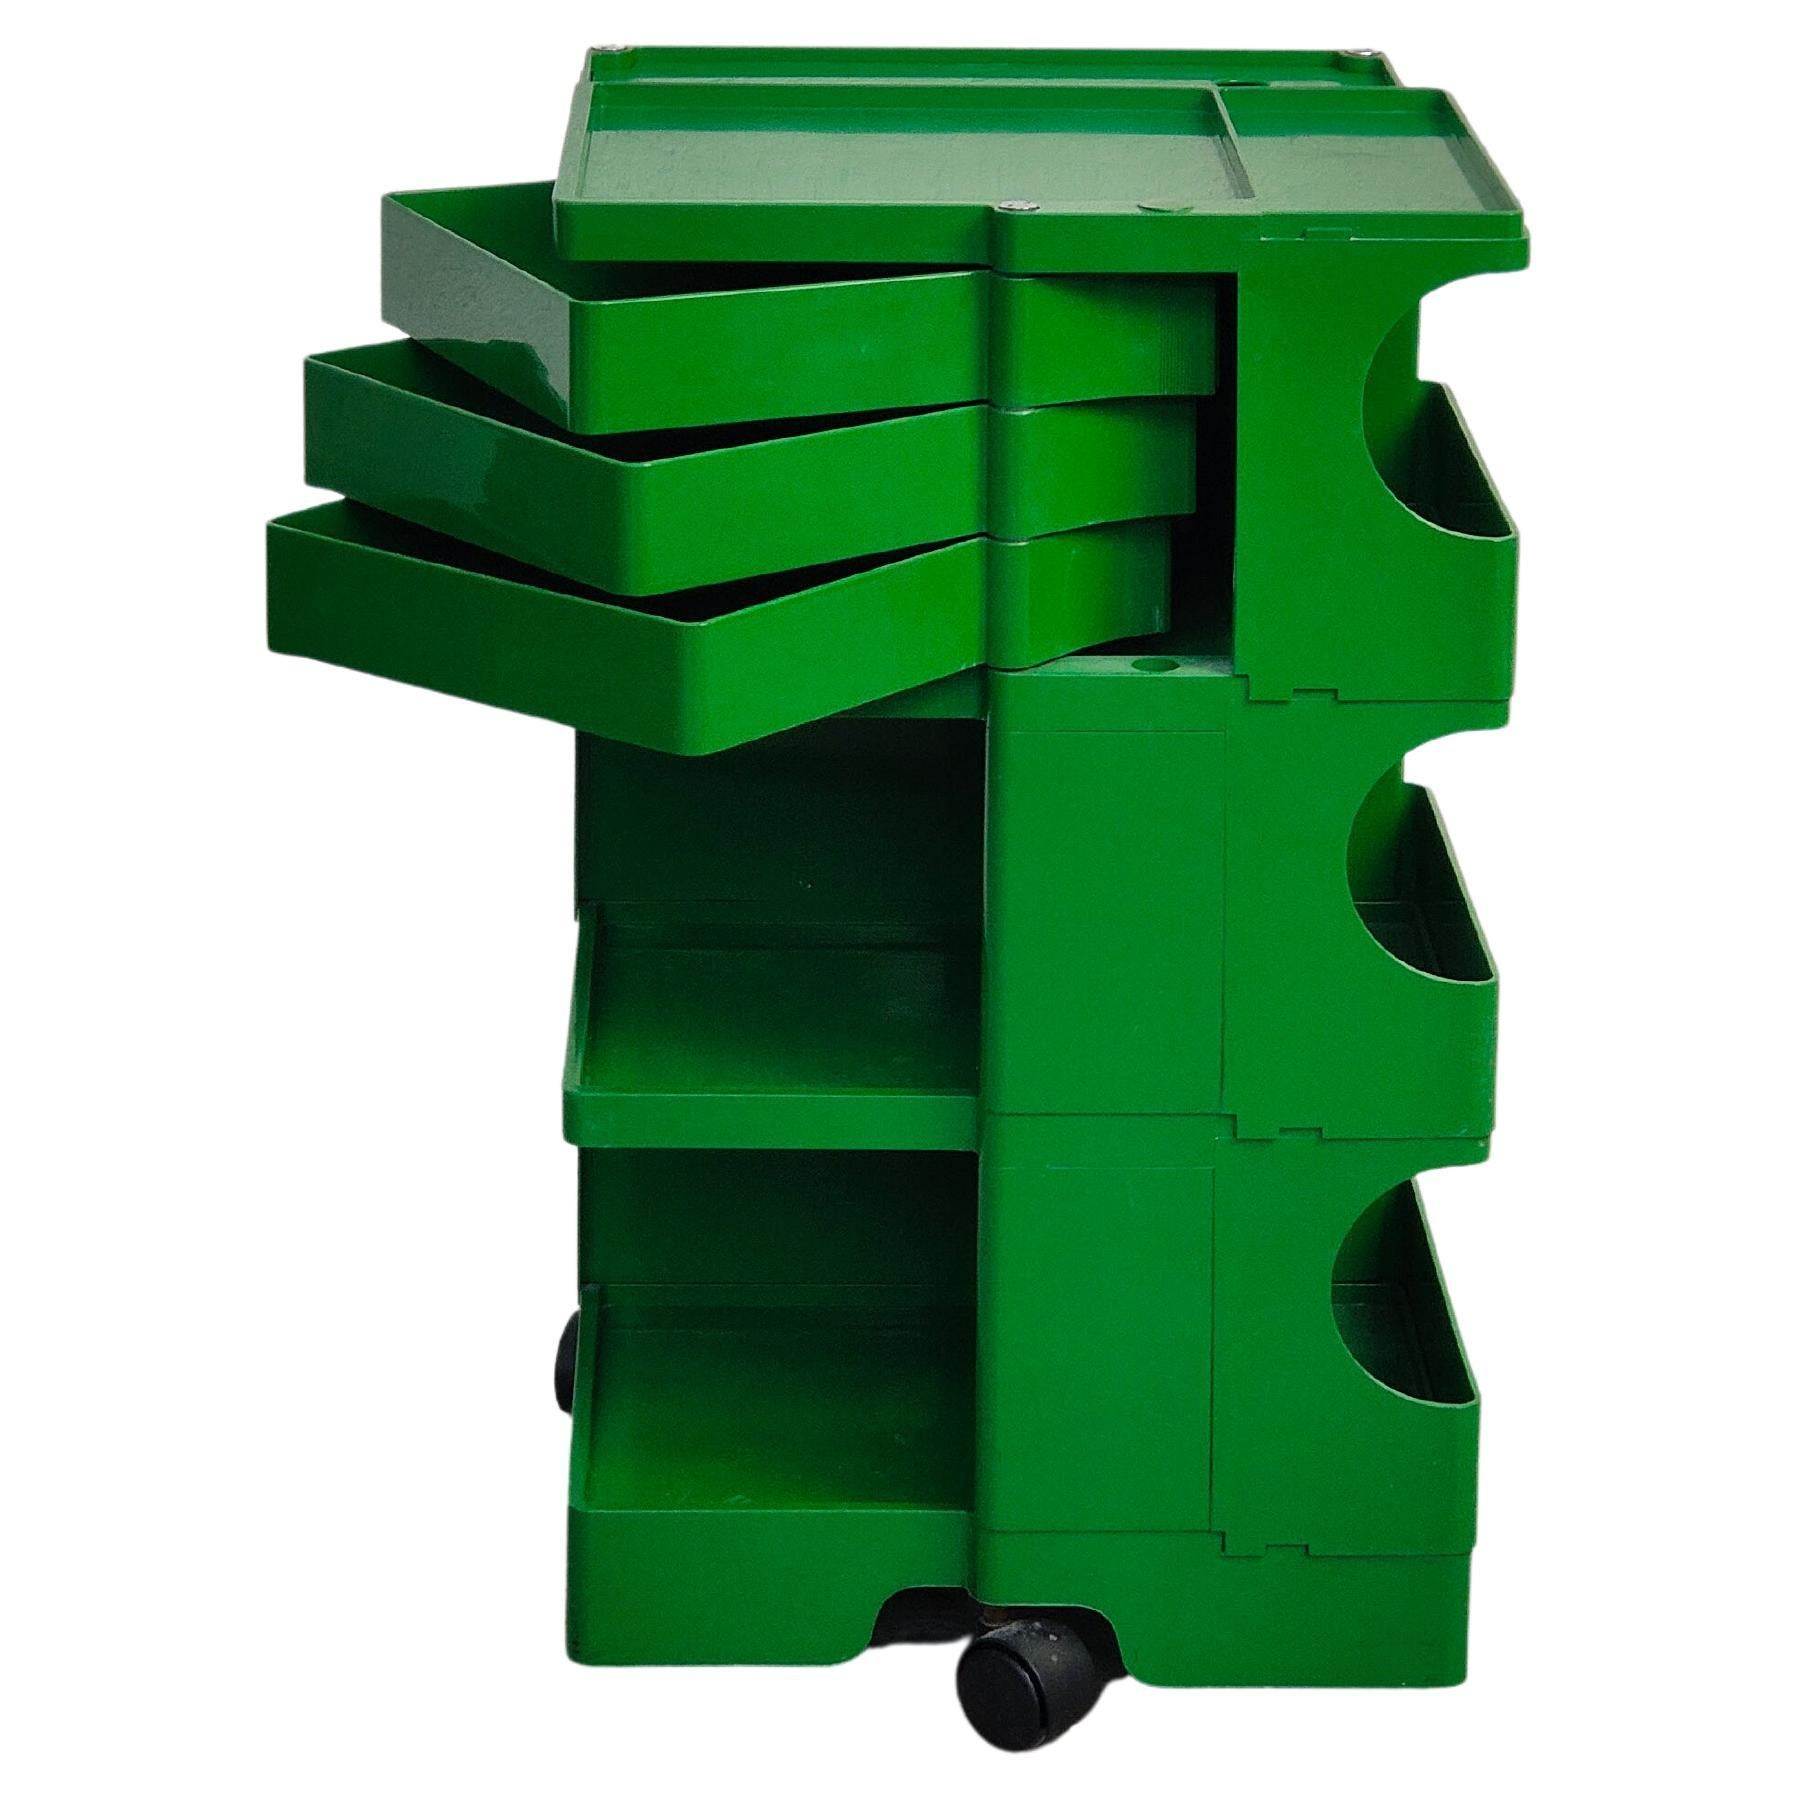 Green Boby Cart by Joe Colombo for Bieffeplast 70s